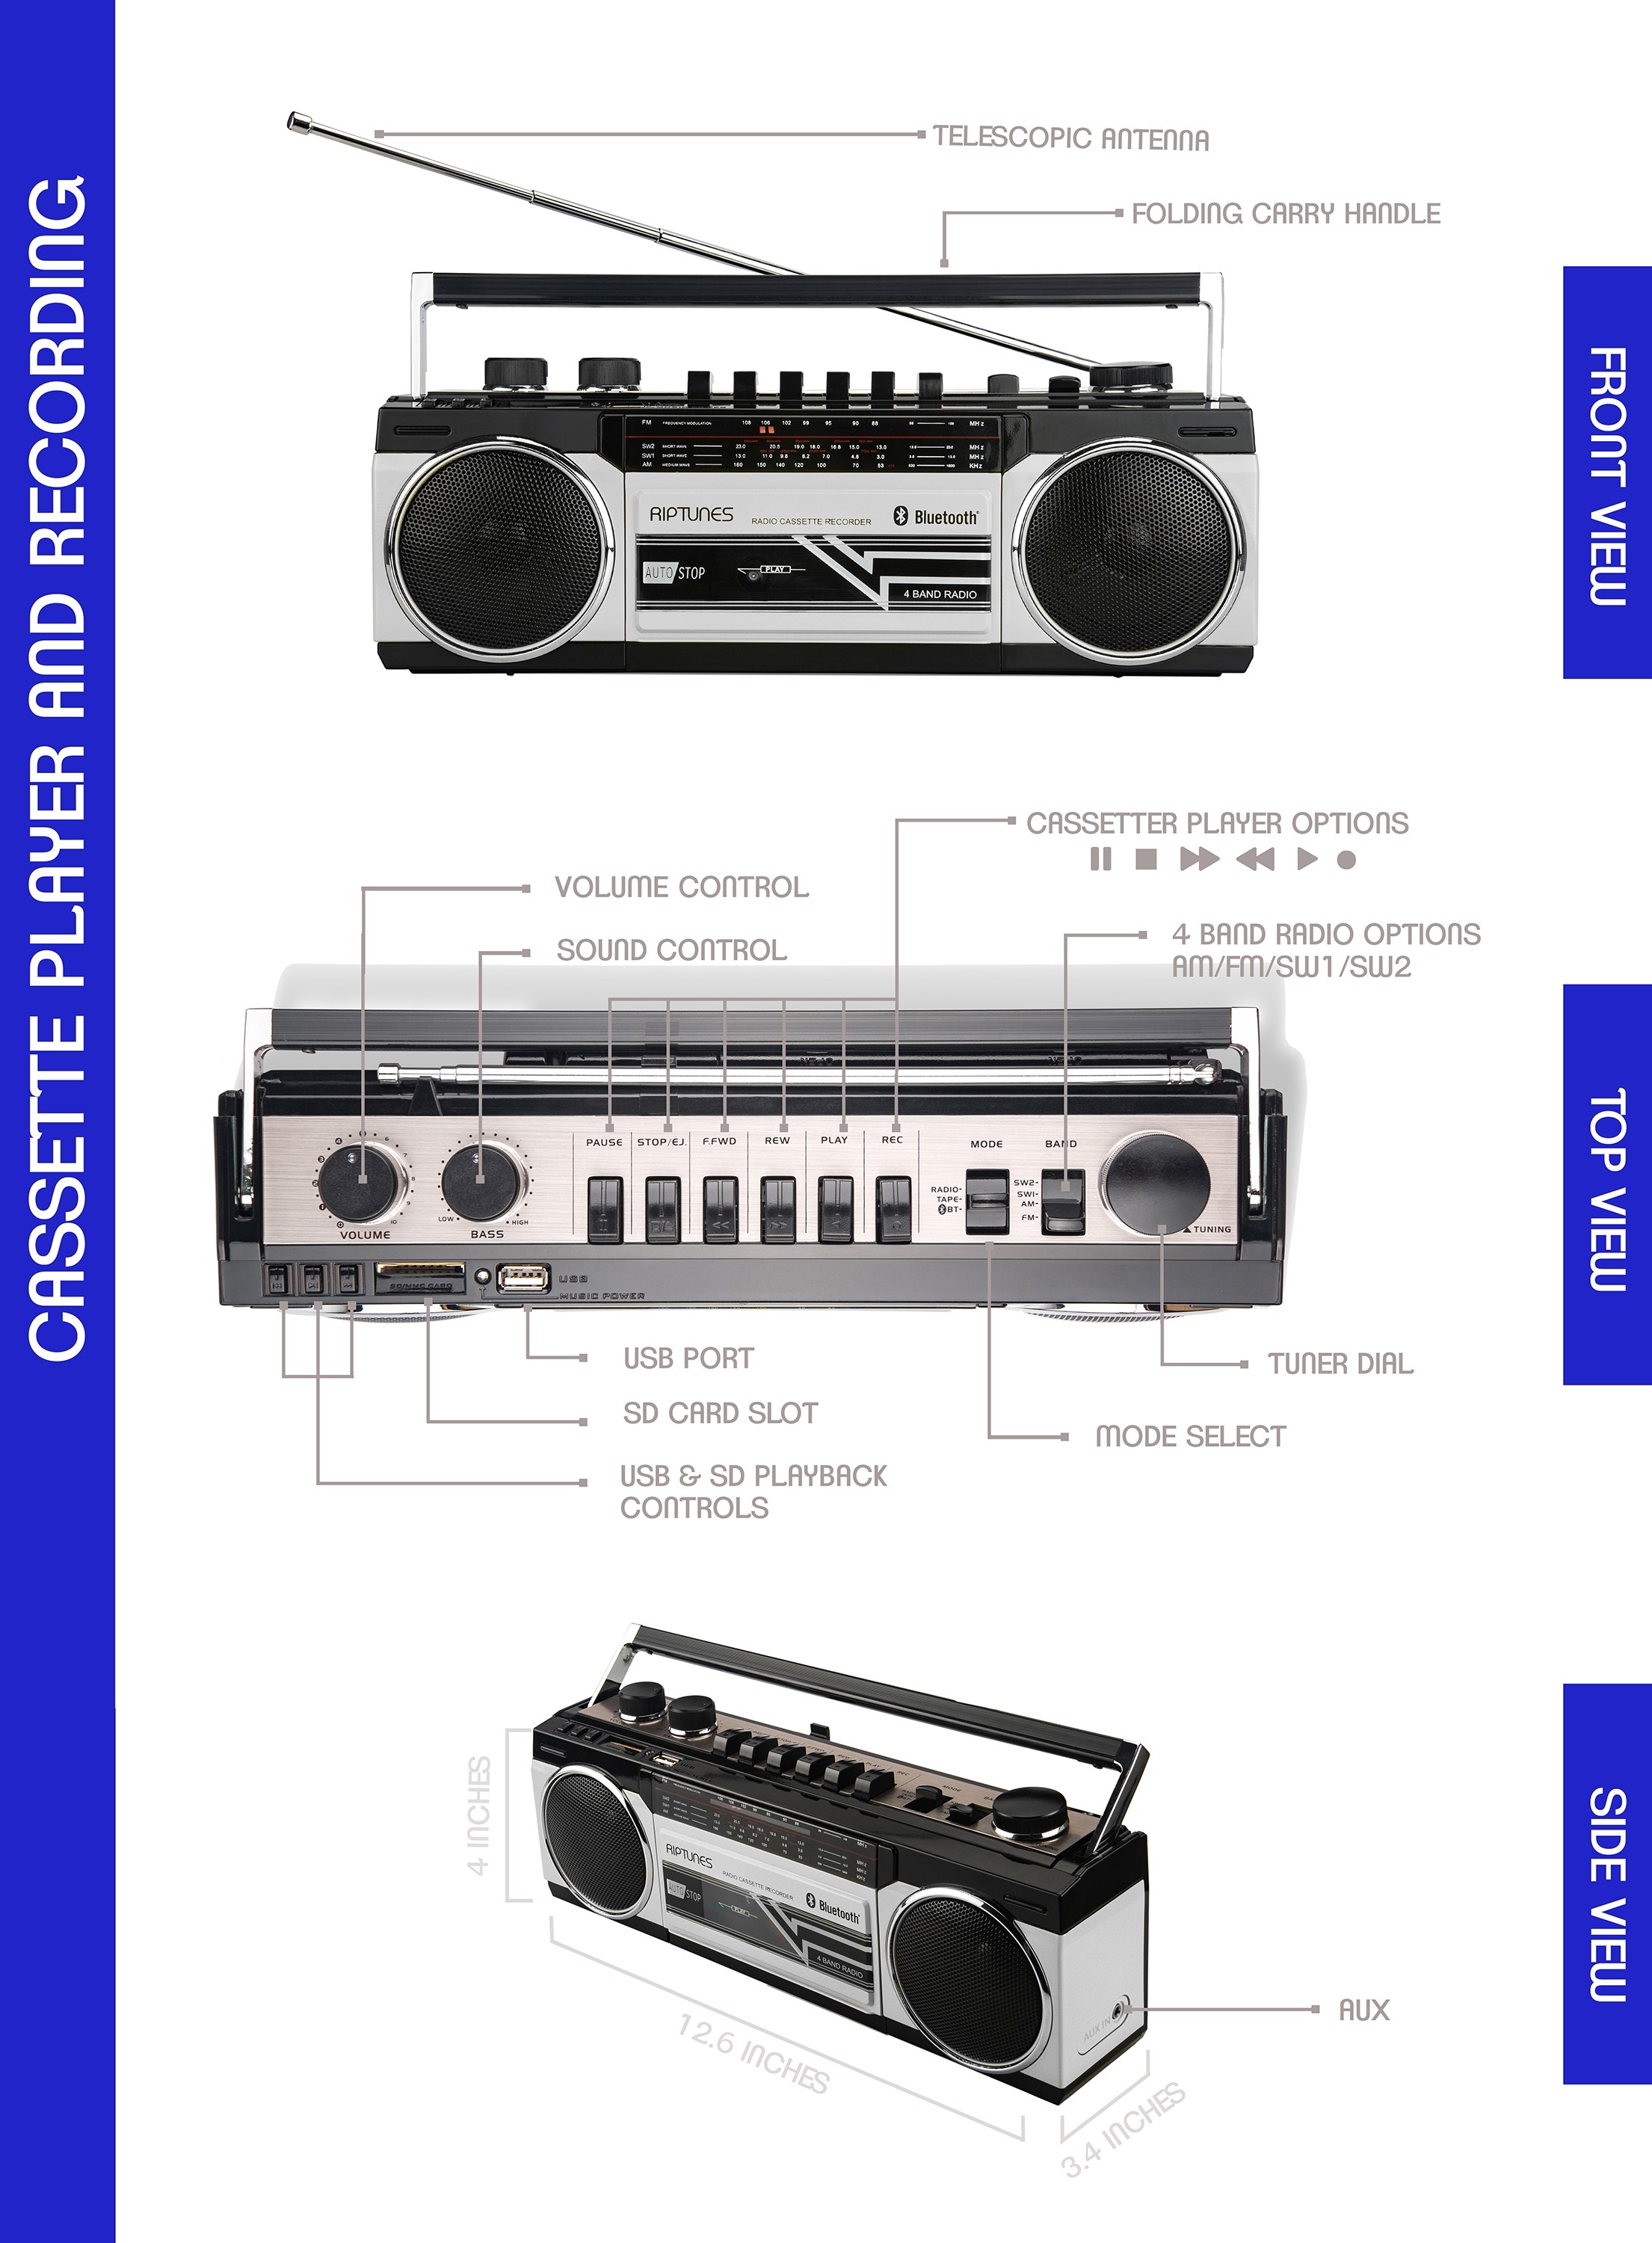 Riptunes Enregistreur cassette portable - Convertisseur de cassette vers  USB - Convertisseur numérique de musique audio rétro pour salle de classe 